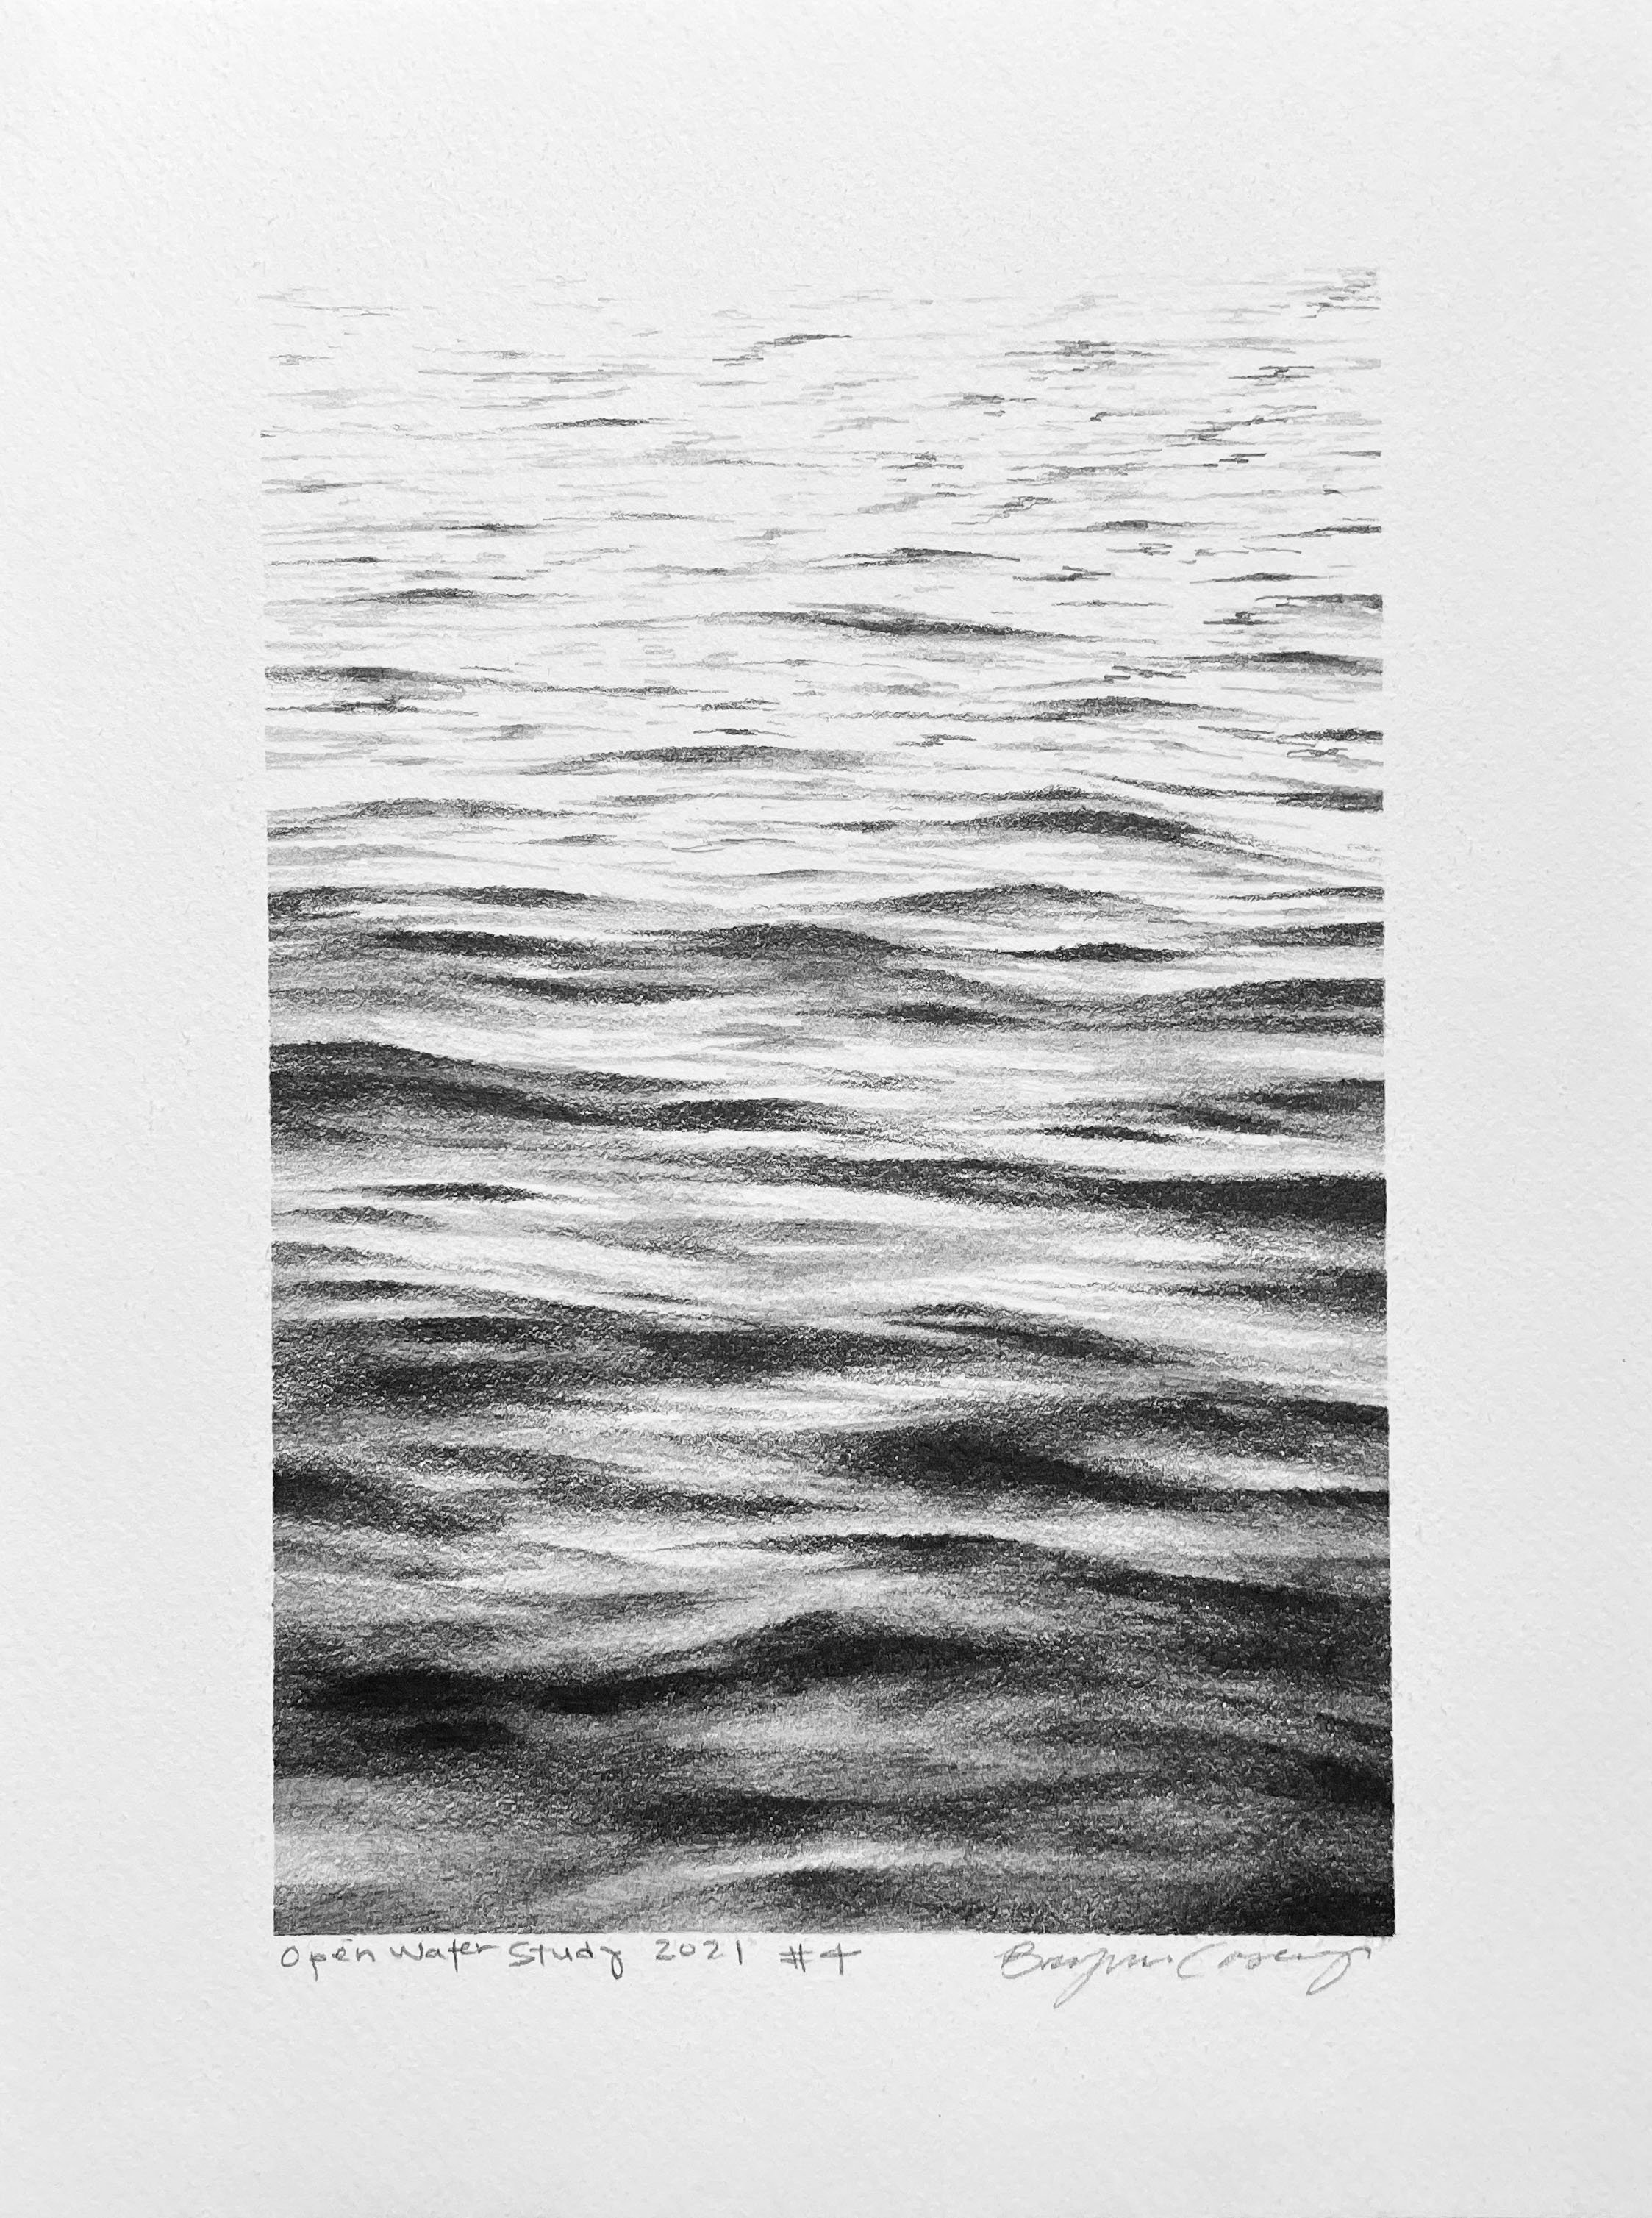 Open Water Sketch #4